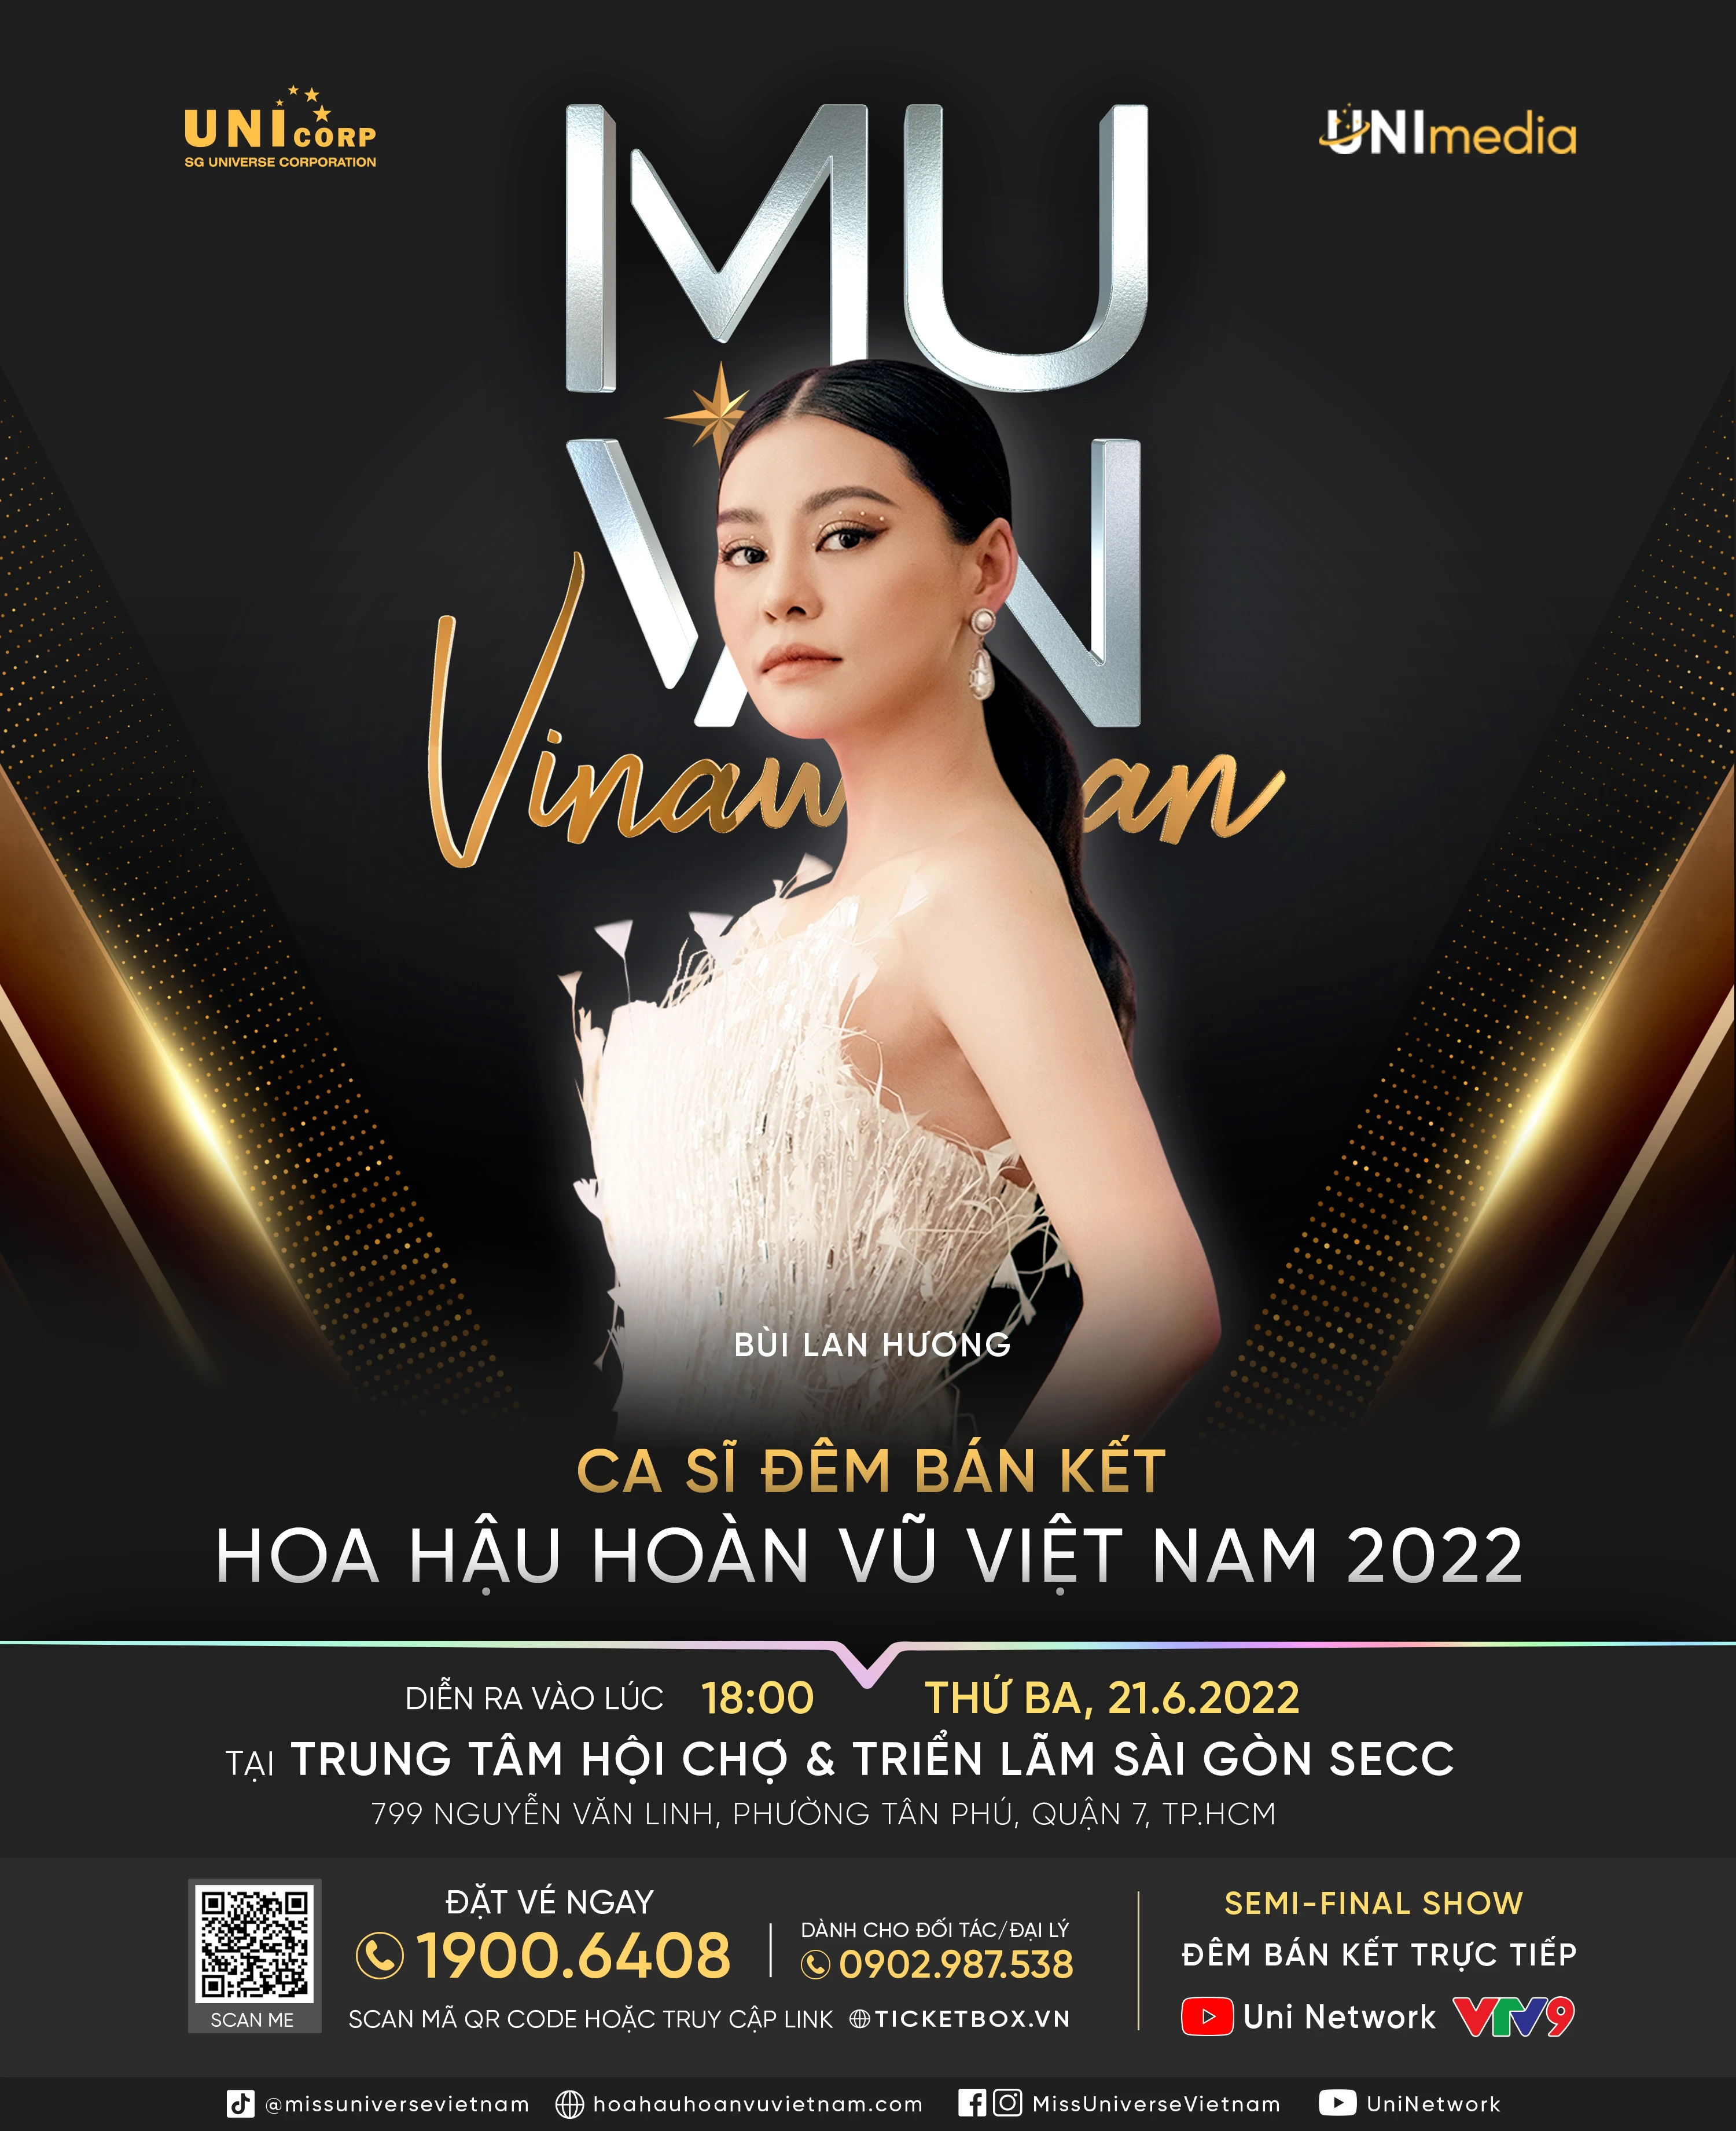 Sự kiện đêm Bán kết Hoa hậu Hoàn vũ Việt Nam 2022 - hứa hẹn màn tranh tài đẳng cấp